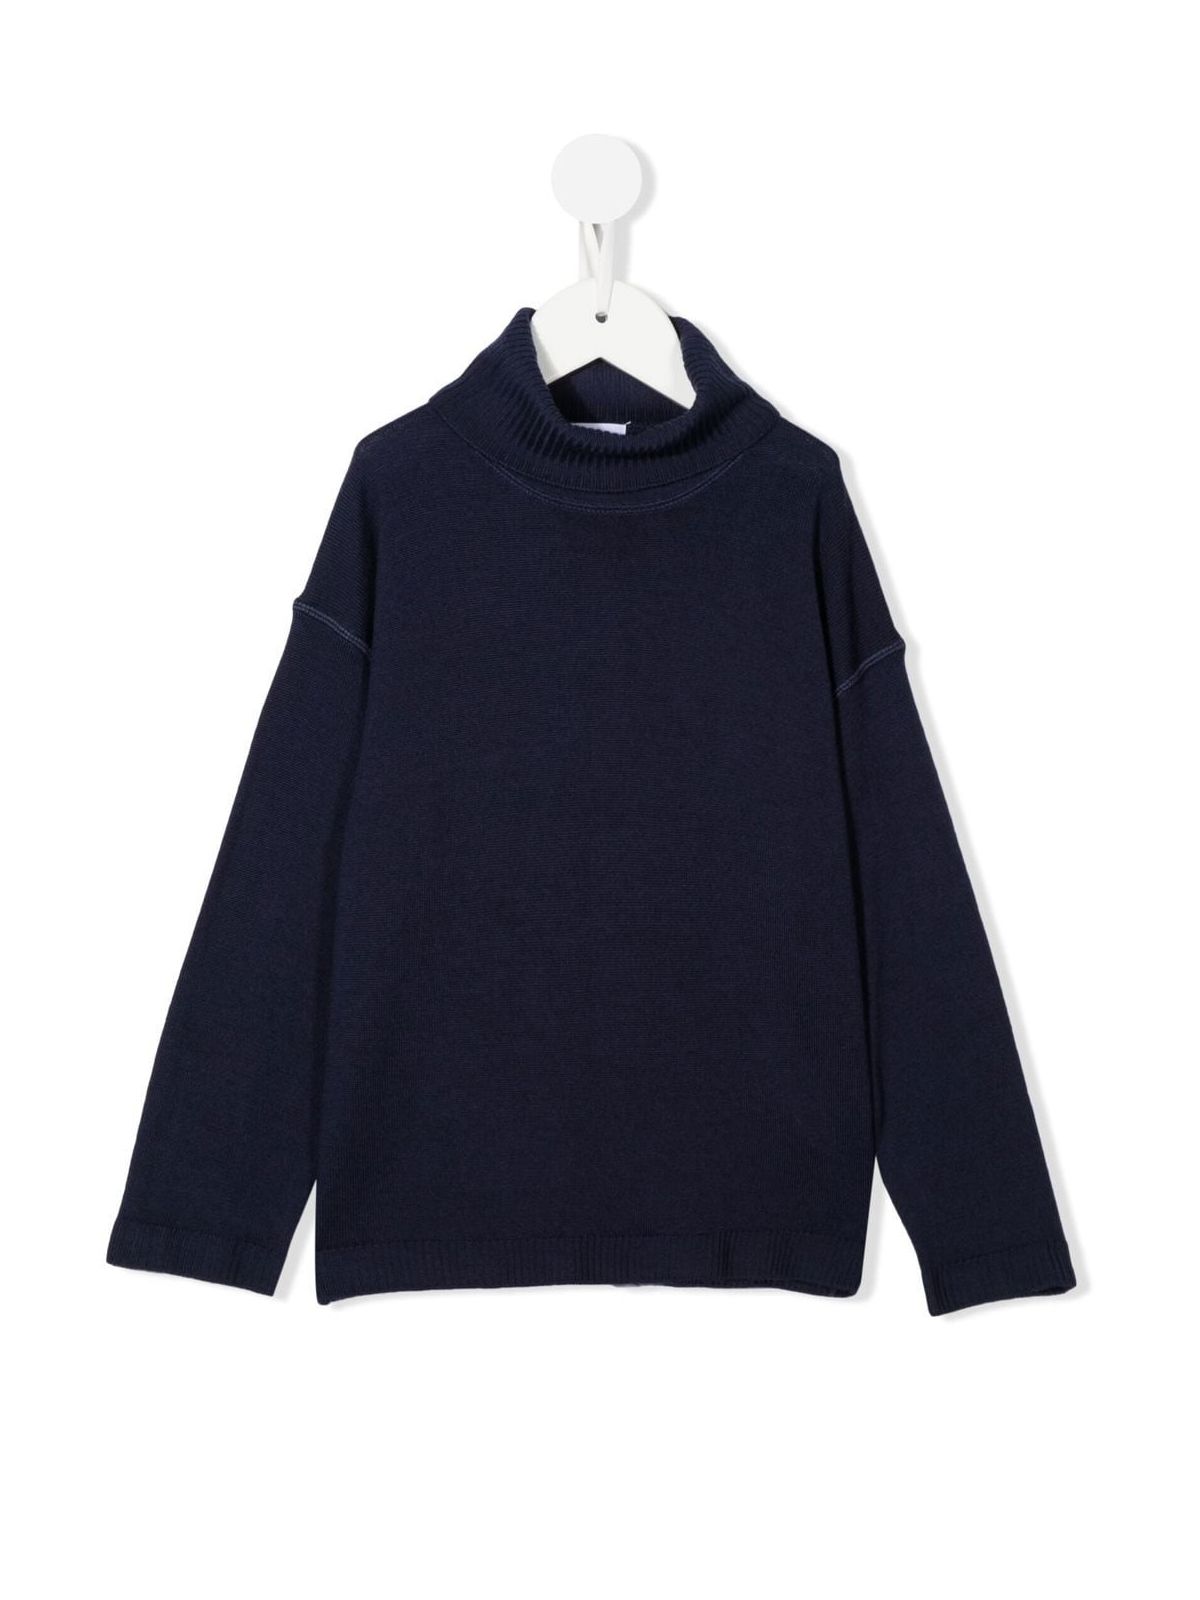 Shop Aspesi Tricot Sweater